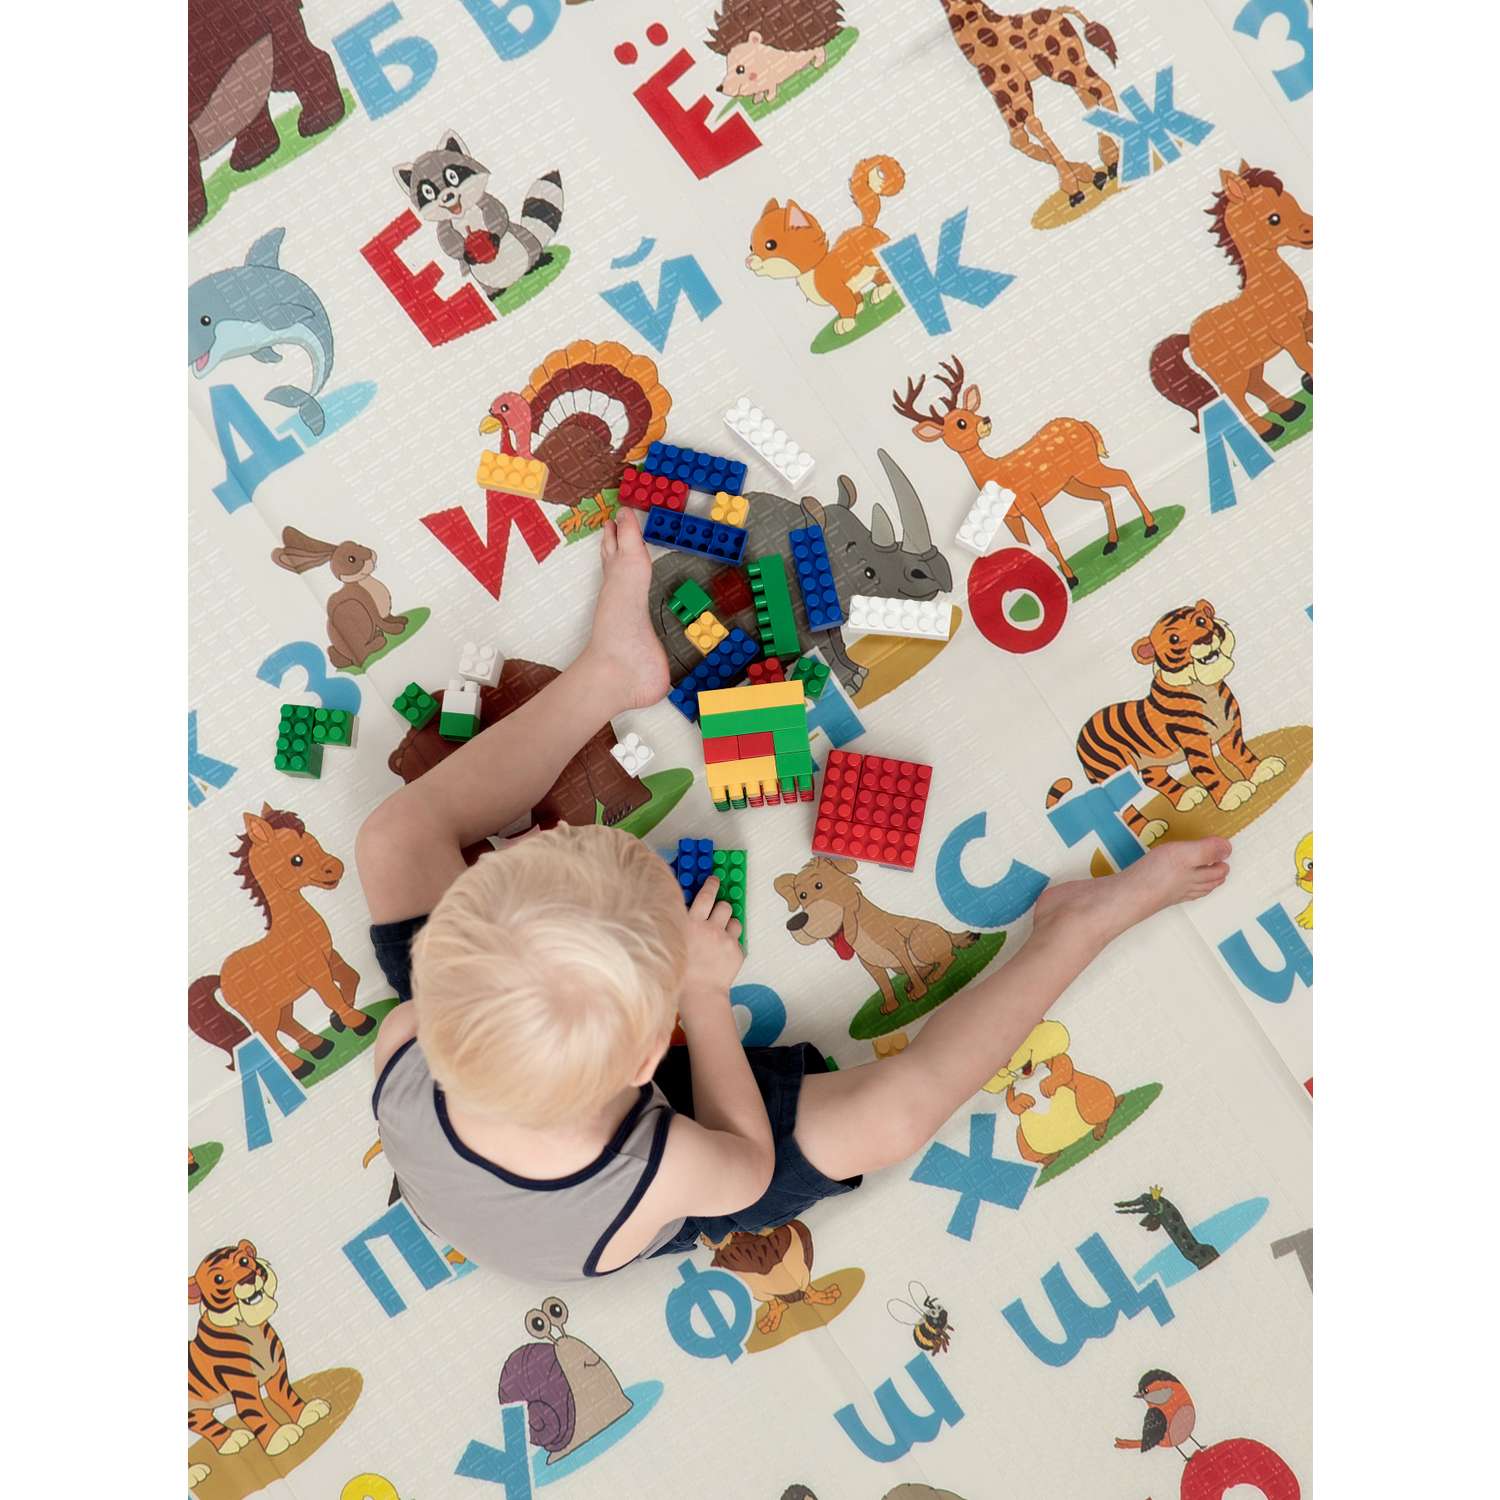 Детский коврик WellMat для ползания 150x200 Premium Русский алфавит/Городок складной развивающий - фото 14